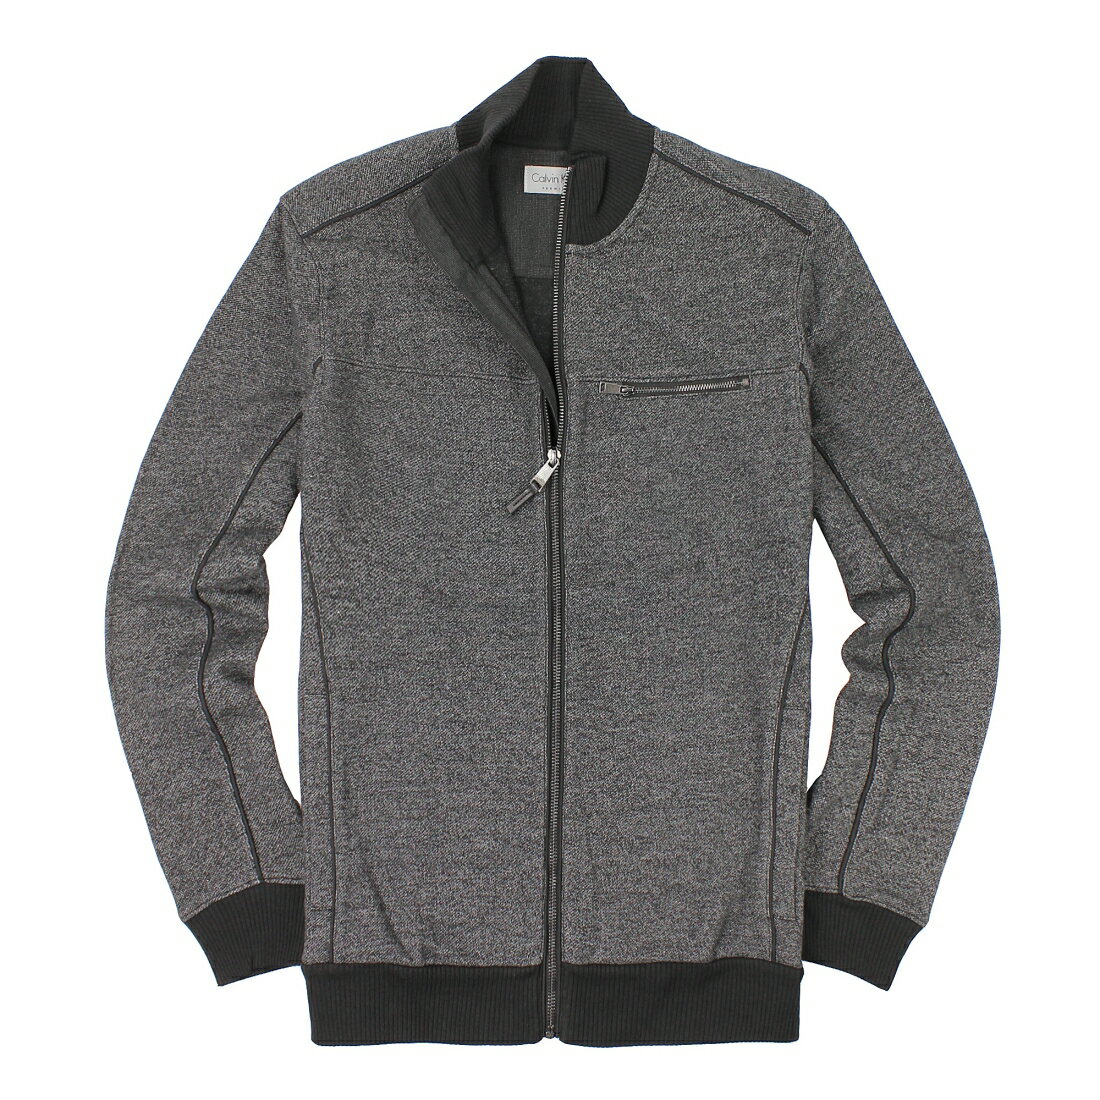 美國百分百【全新真品】Calvin Klein 外套 CK 夾克 Logo 針織 立領 灰色 口袋 厚棉 男款 L號 A865